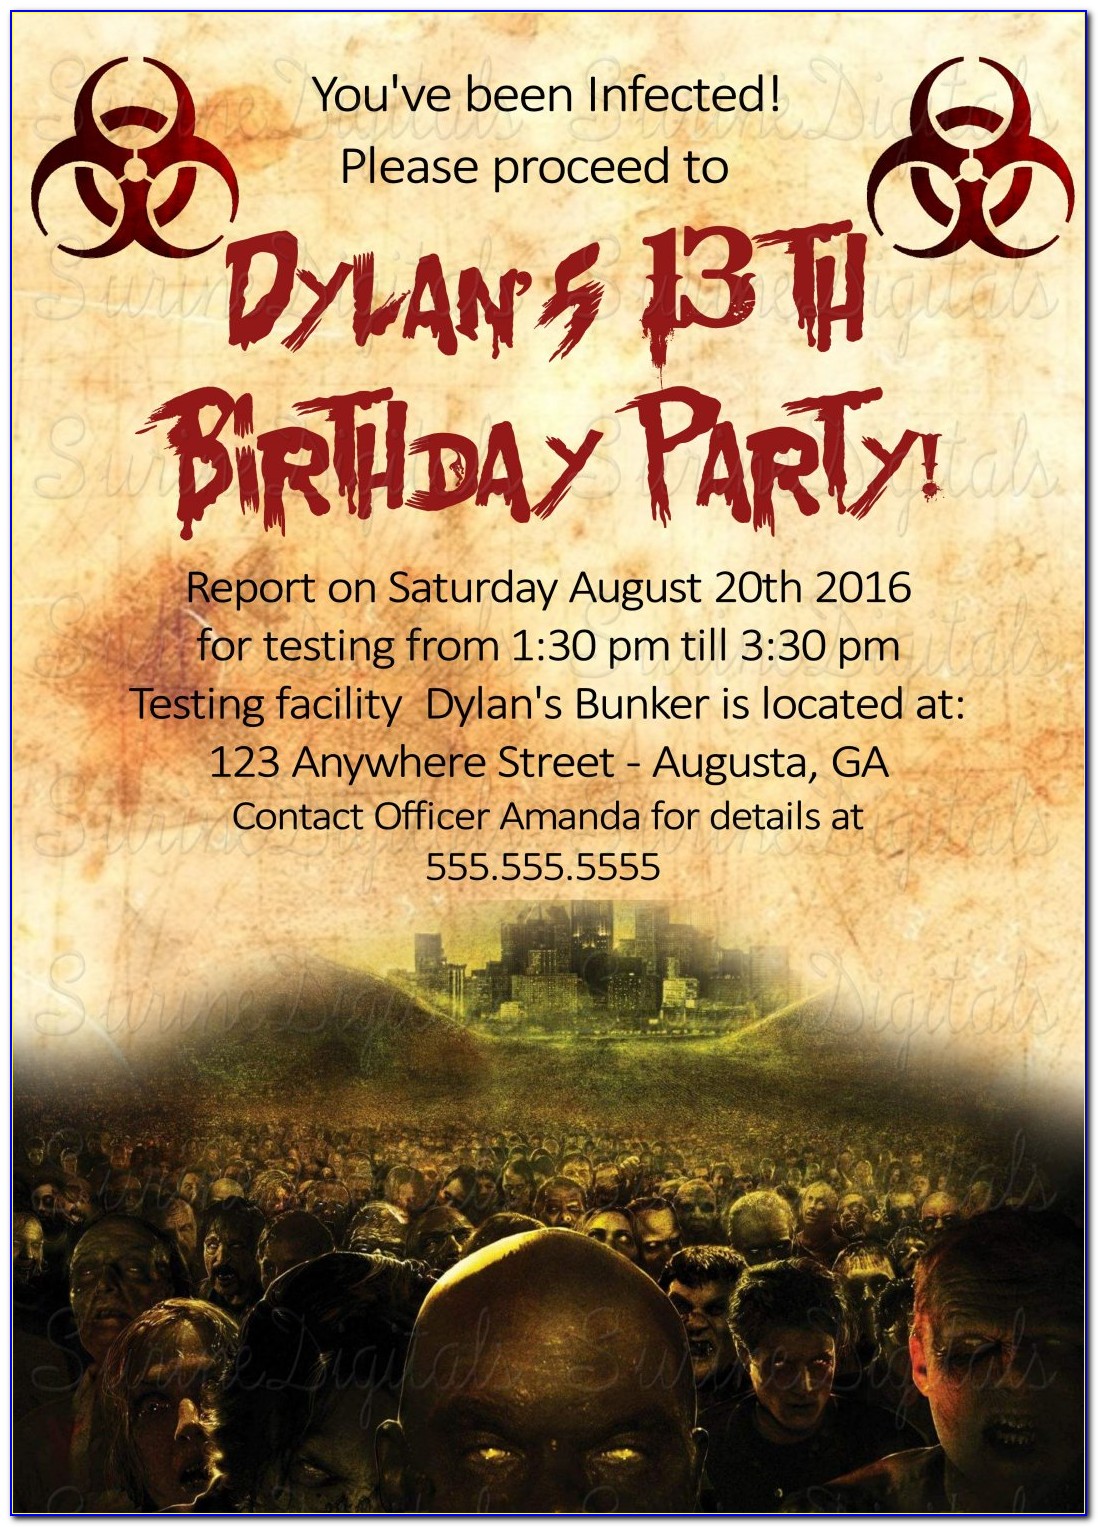 Walking Dead Birthday Invitations